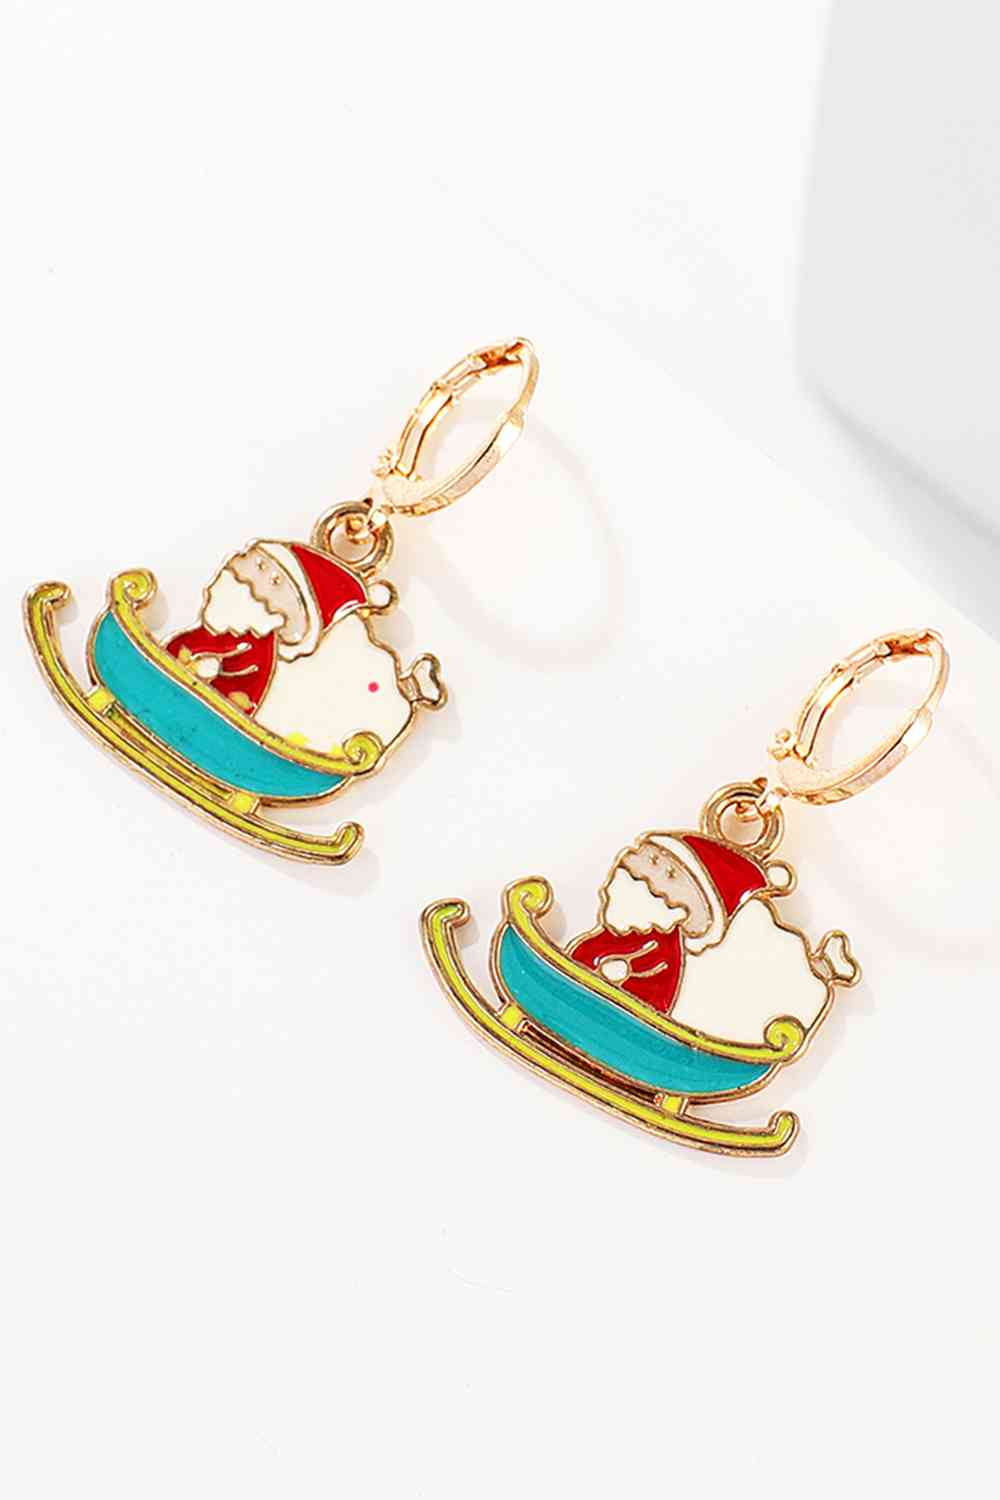 Christmas Theme Alloy Earrings - Women’s Jewelry - Earrings - 11 - 2024